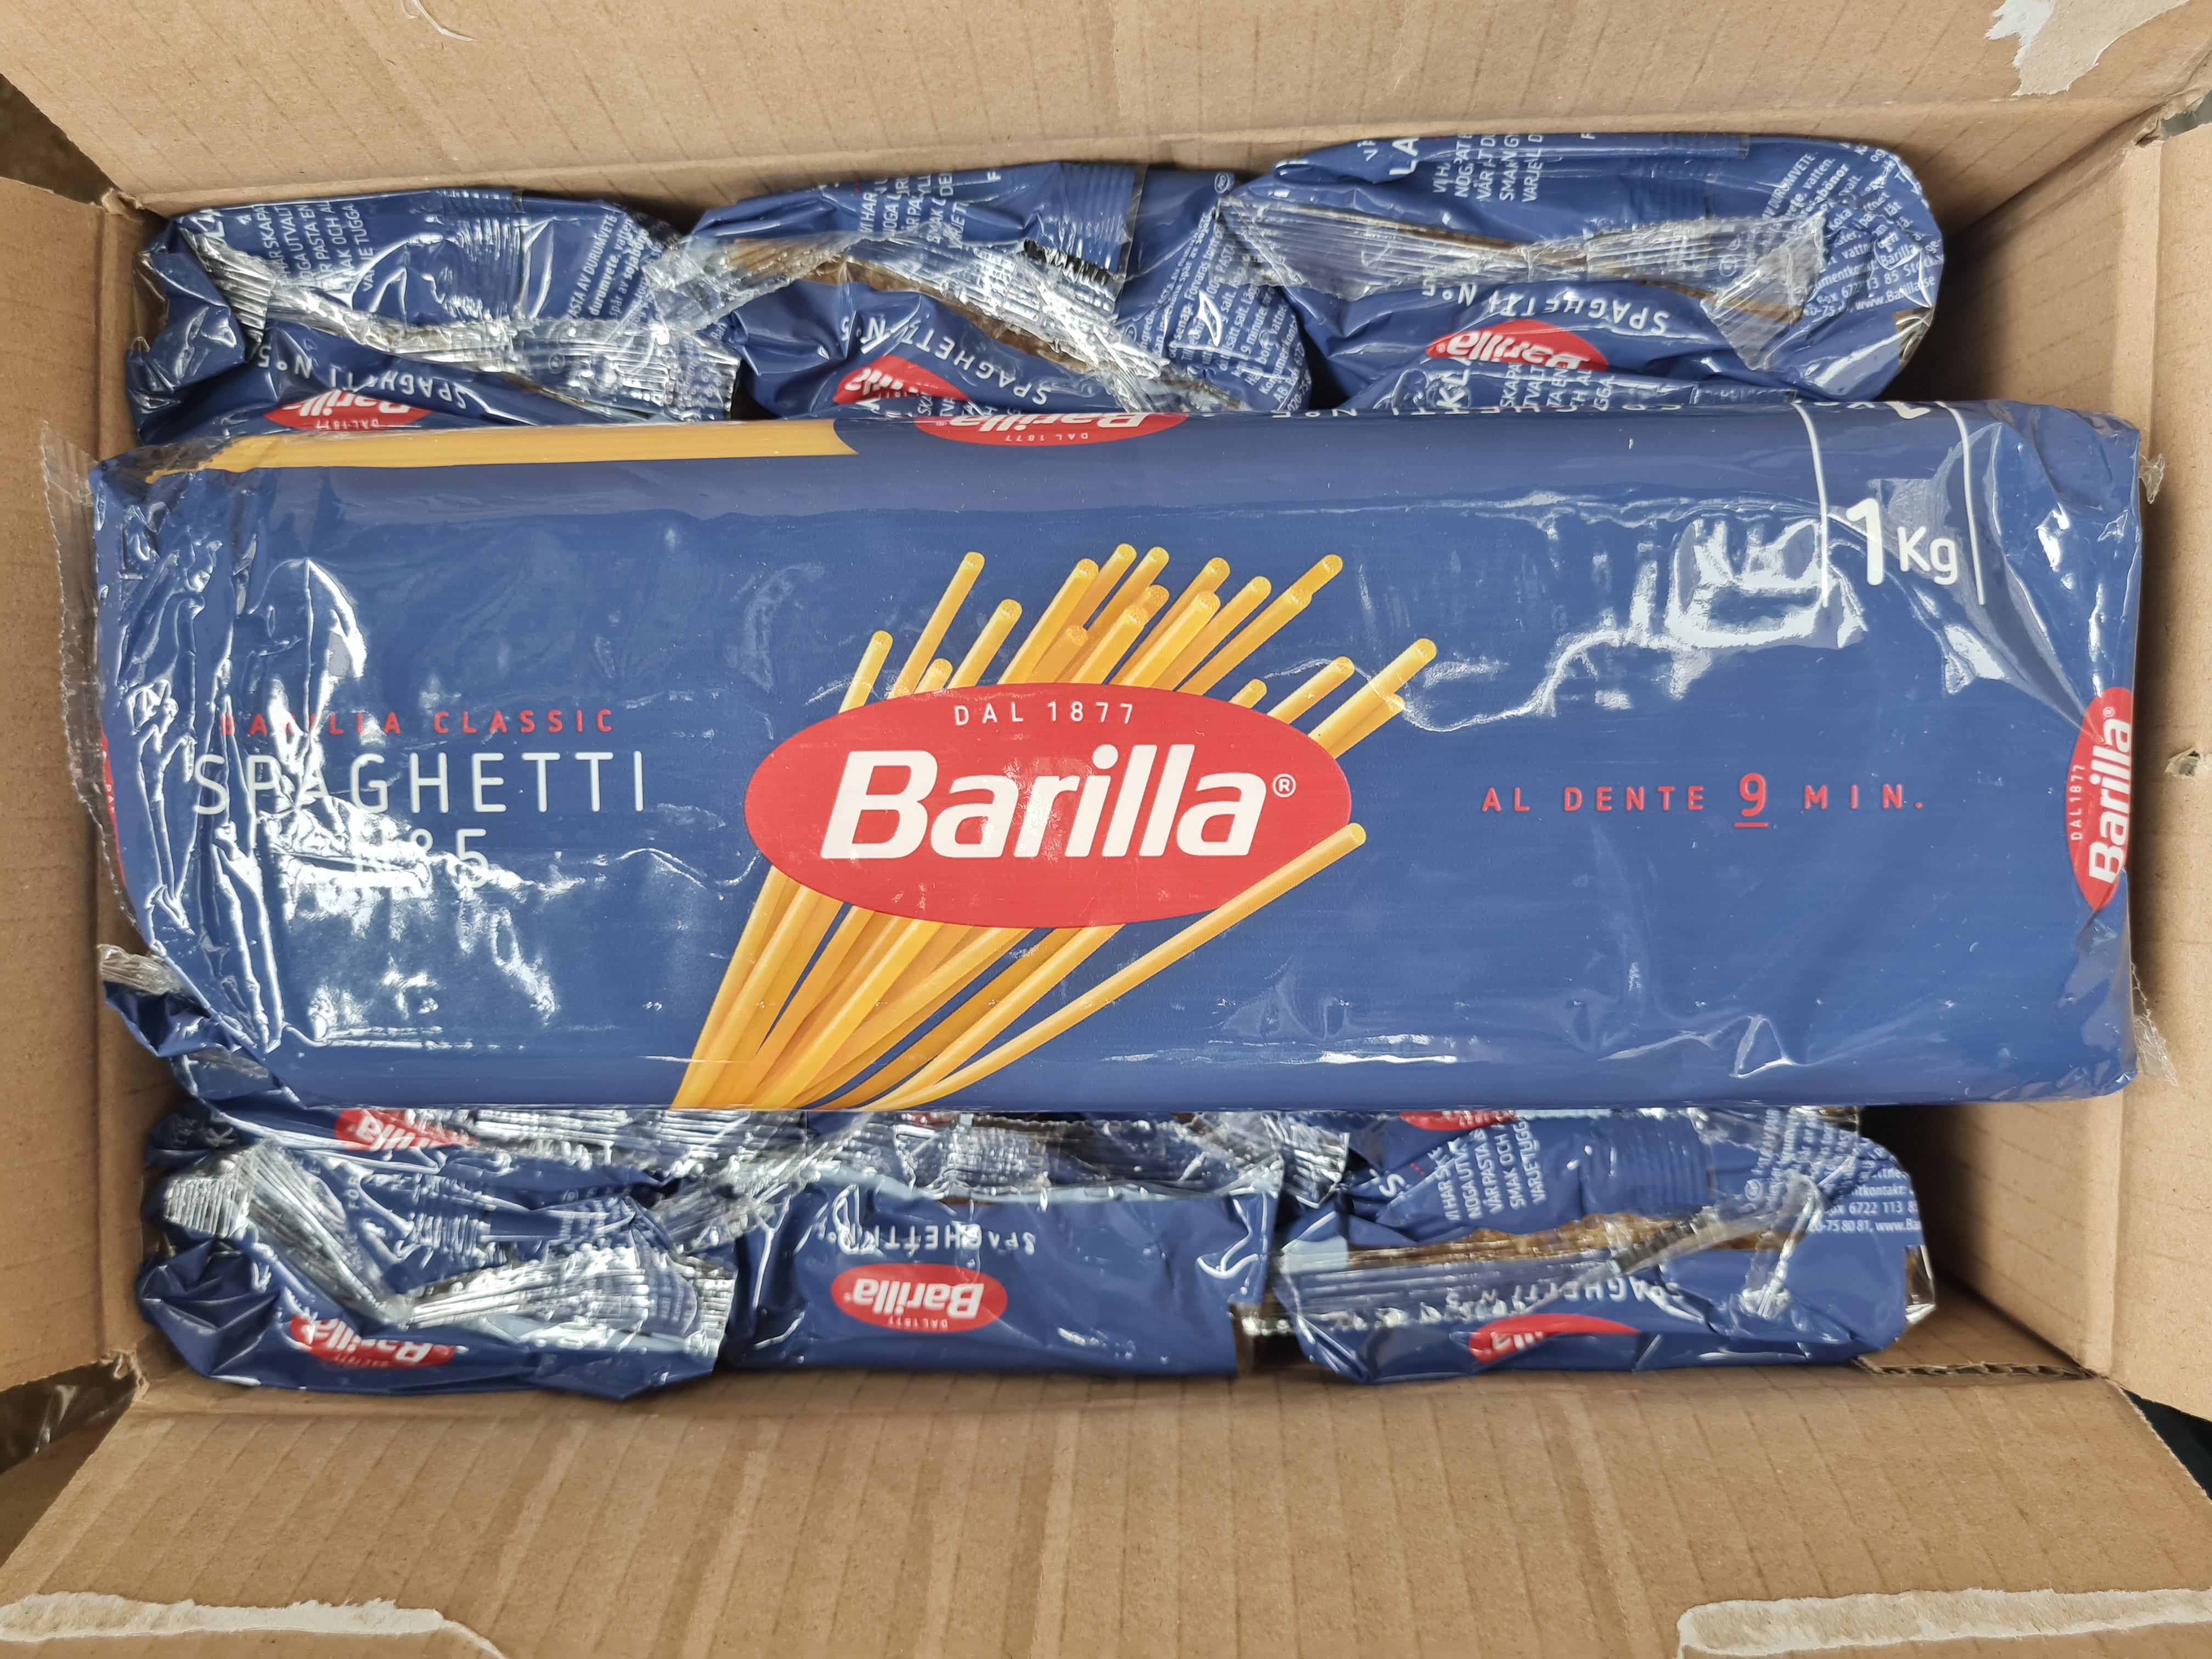 [TÚI 1KG] Mì Spaghetti Barilla số 5